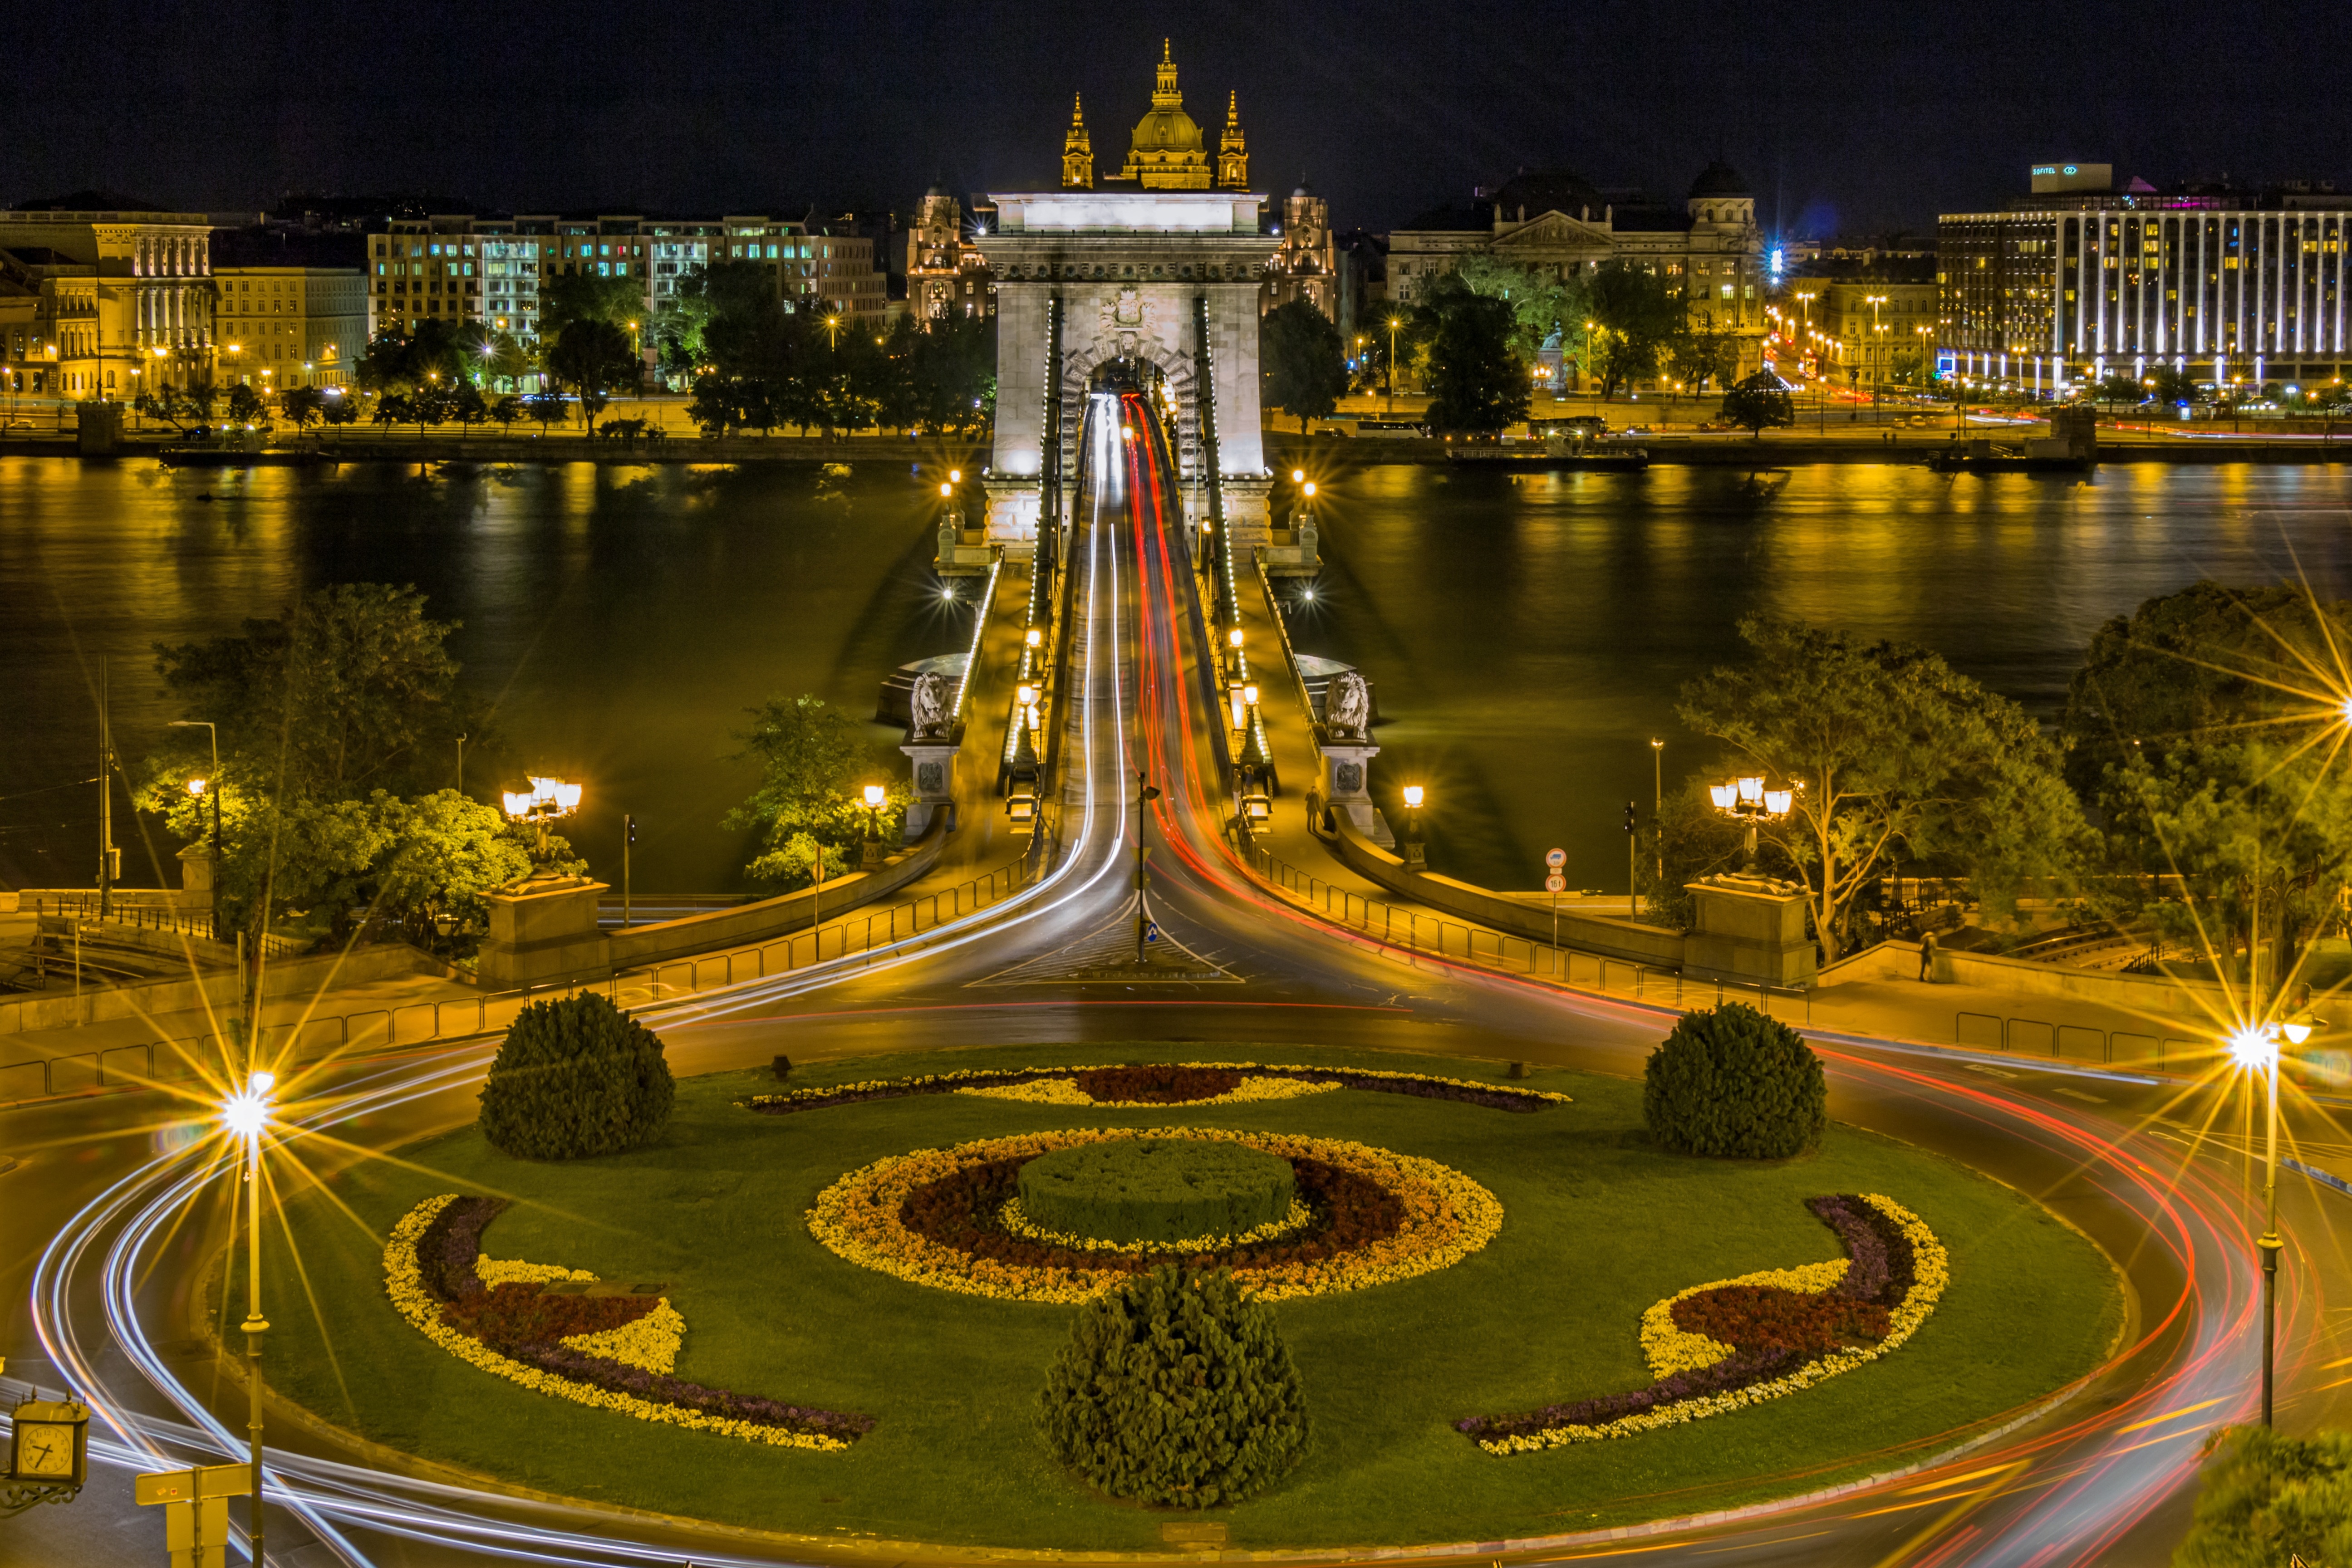 Chain Bridge in Budapest, Hungary by Bergadder